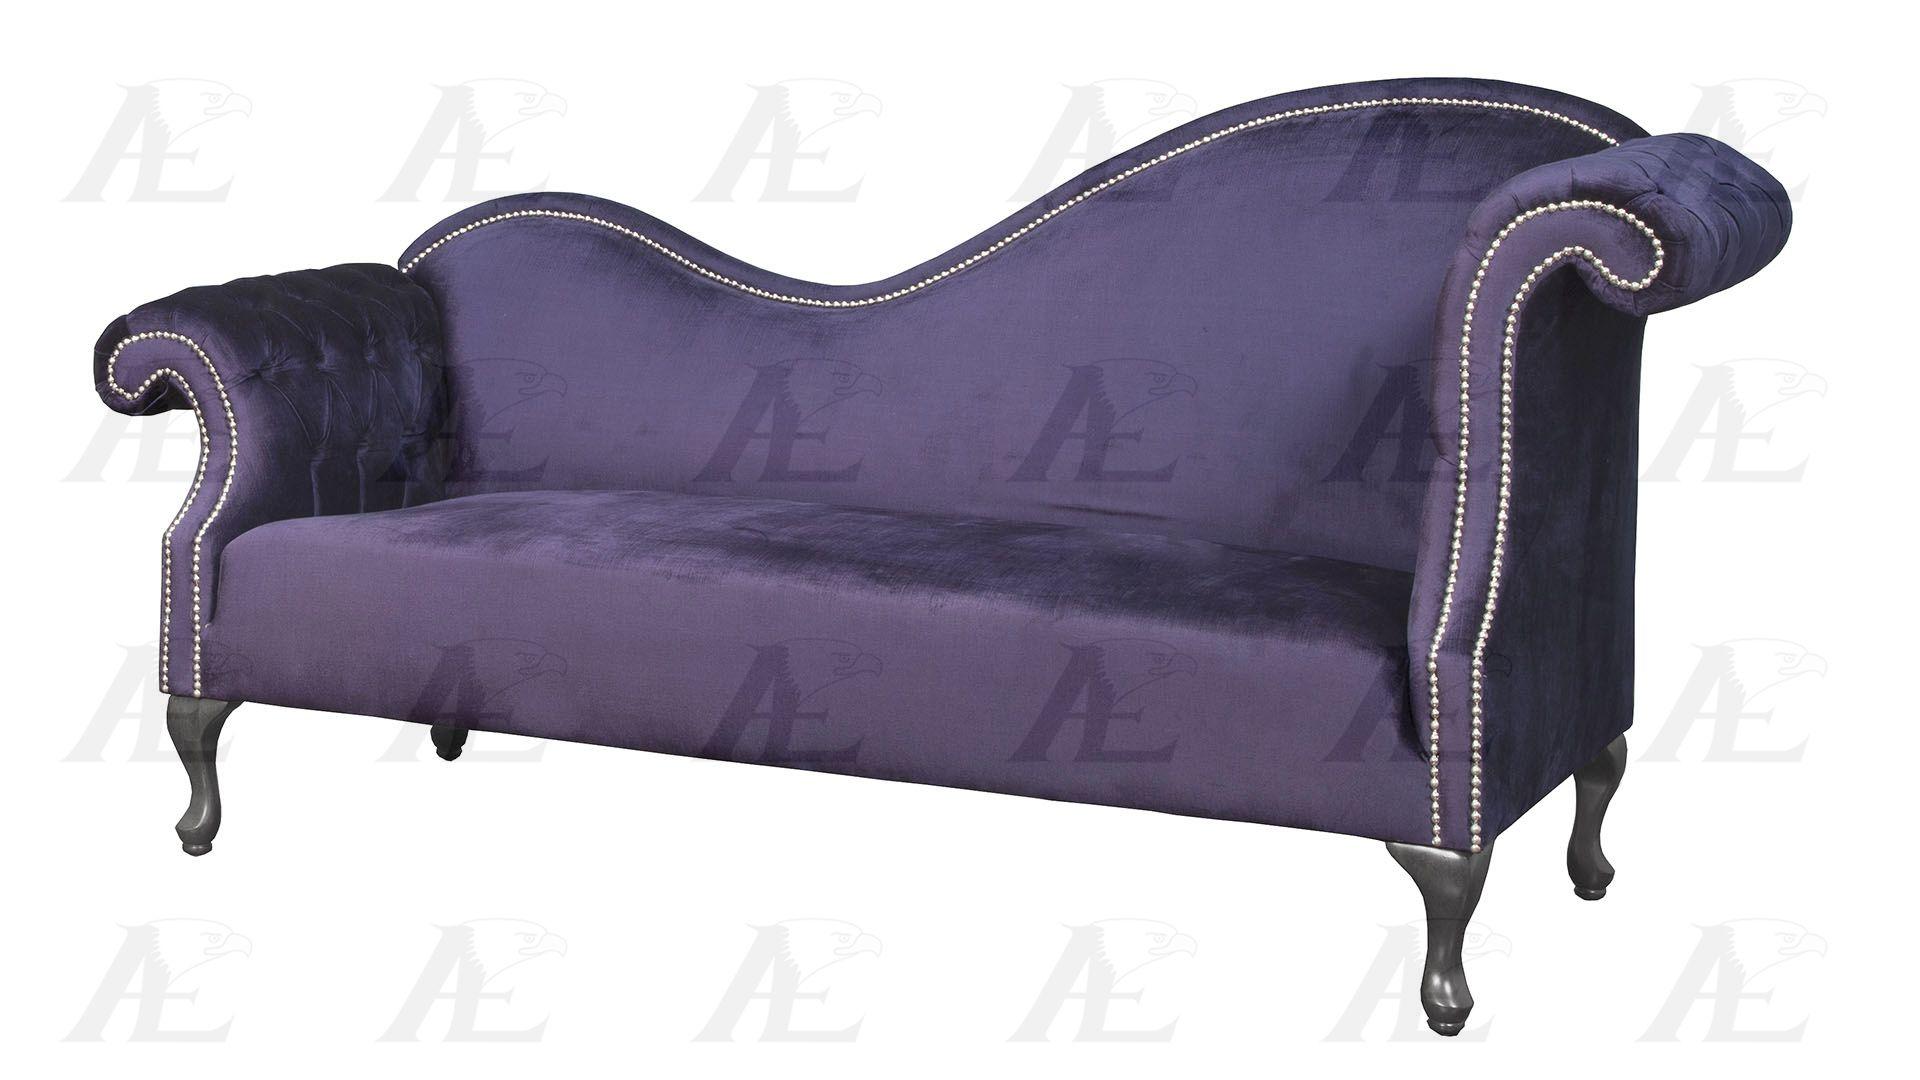 

                    
American Eagle Furniture AE2601-NB Sofa Set Purple Fabric Purchase 
